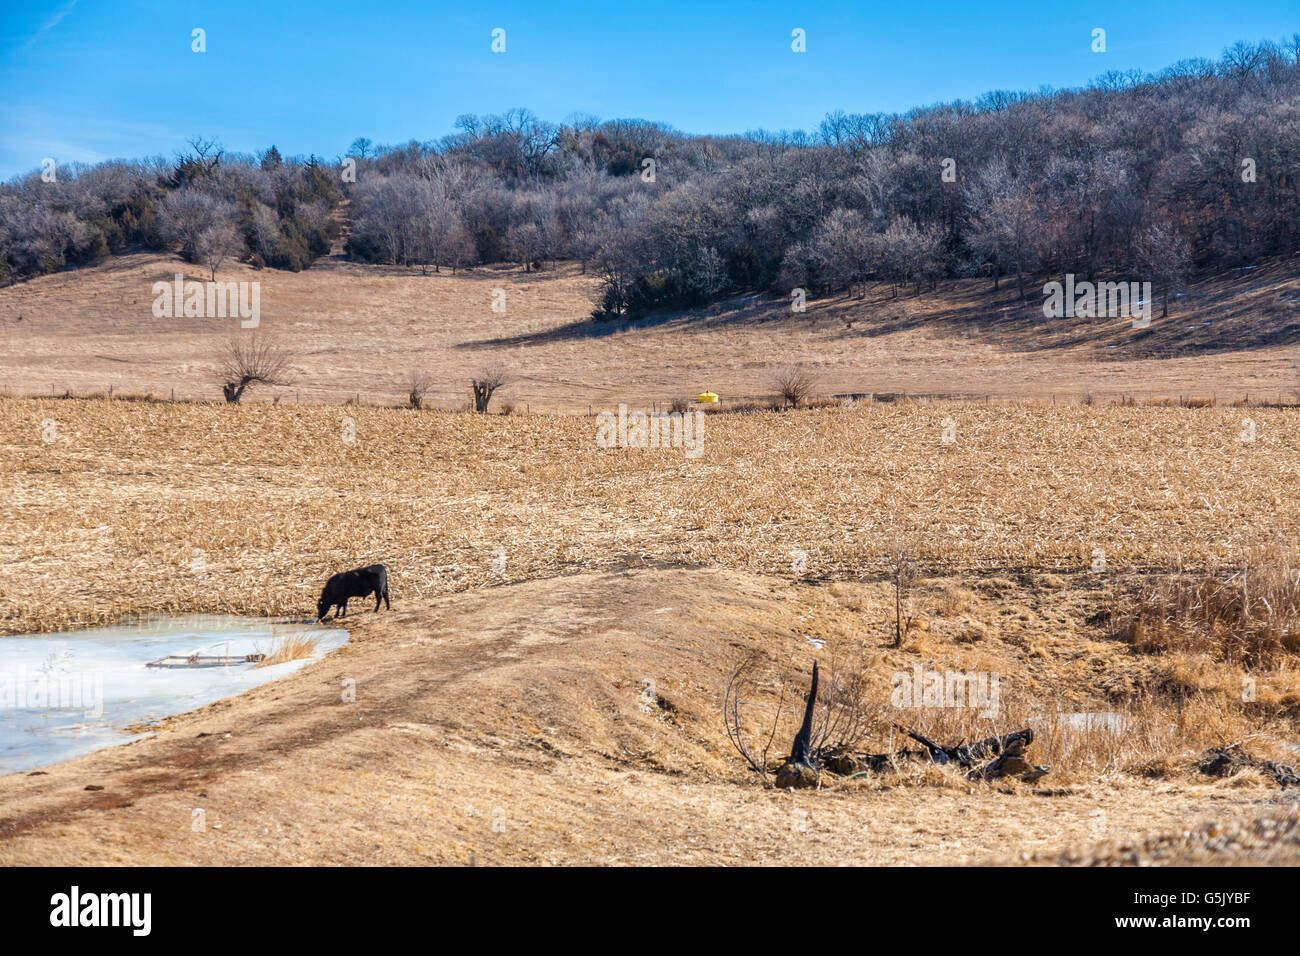 Boire de l'eau de vache congelé dans un champ le long des chemins de l'Iowa en boucle entre nature sauvage et Kennebec Castana, Iowa Banque D'Images